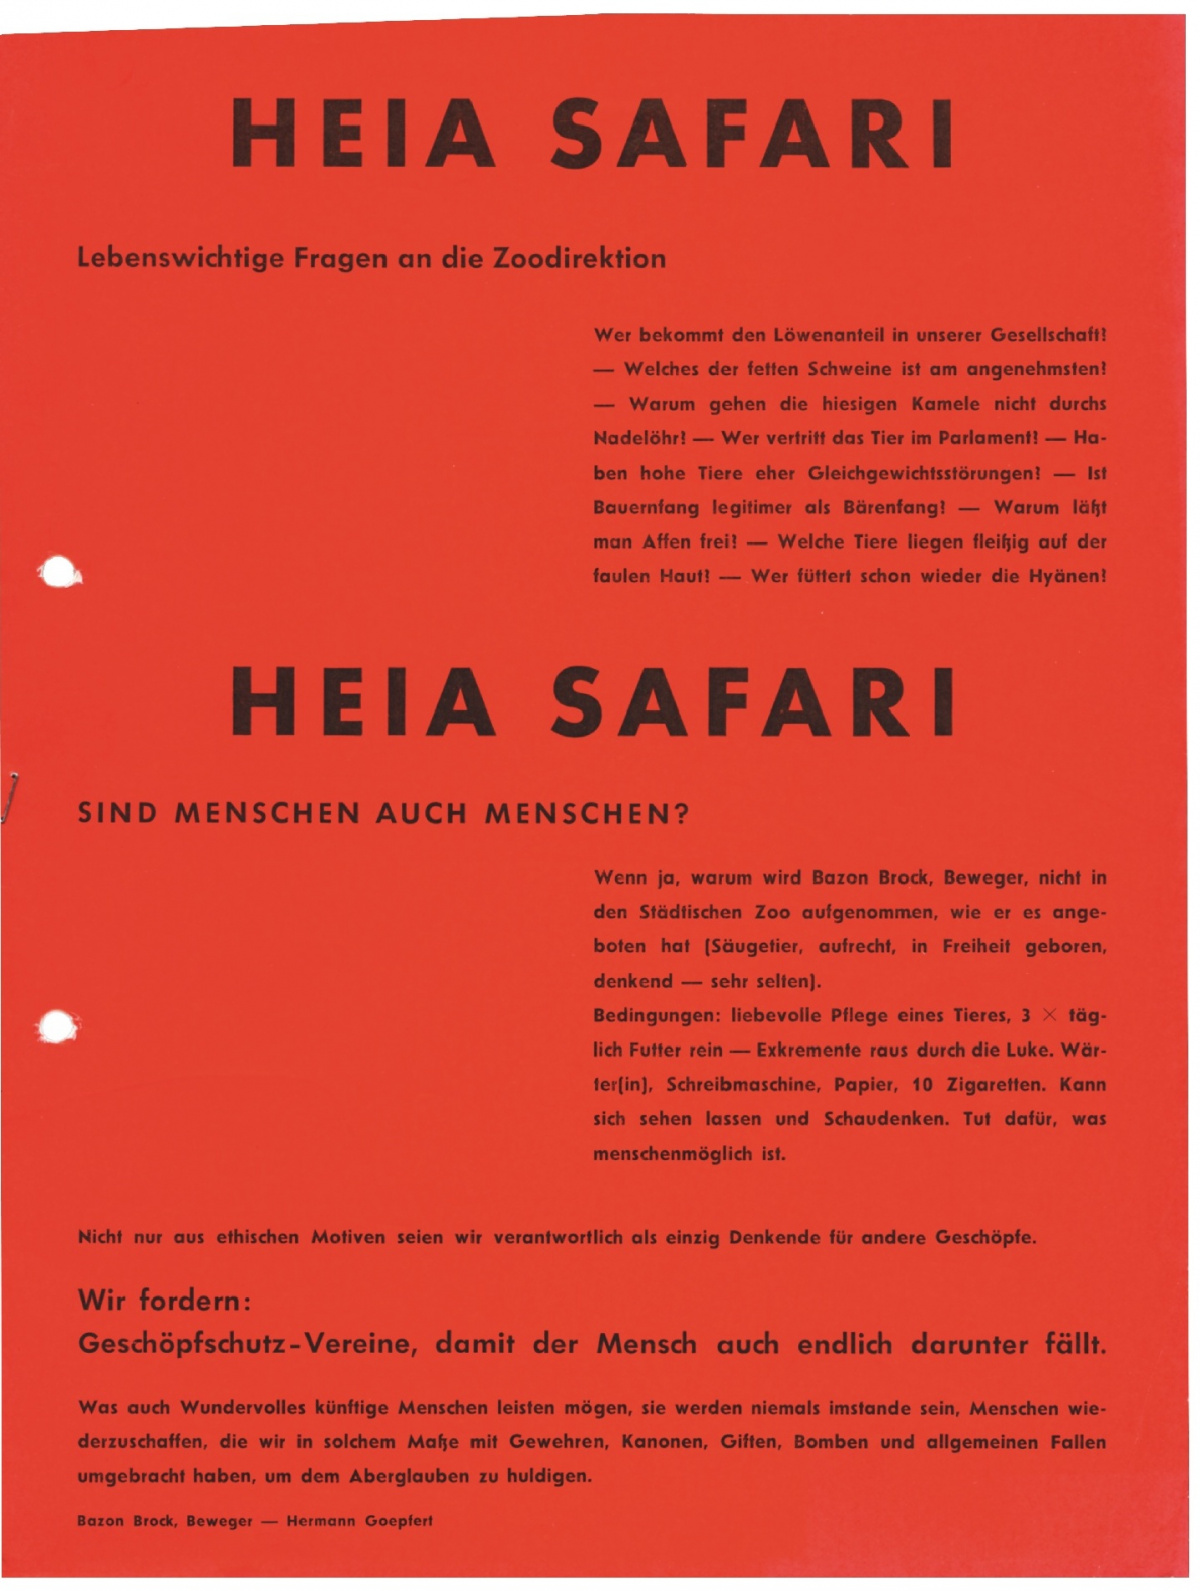 Heia Safari, Bild: Plakat zur Aktion im Rahmen der "Donnerstagsmanifeste" von Bazon Brock und Hermann Goepfert, Frankfurt am Main 1962/63..